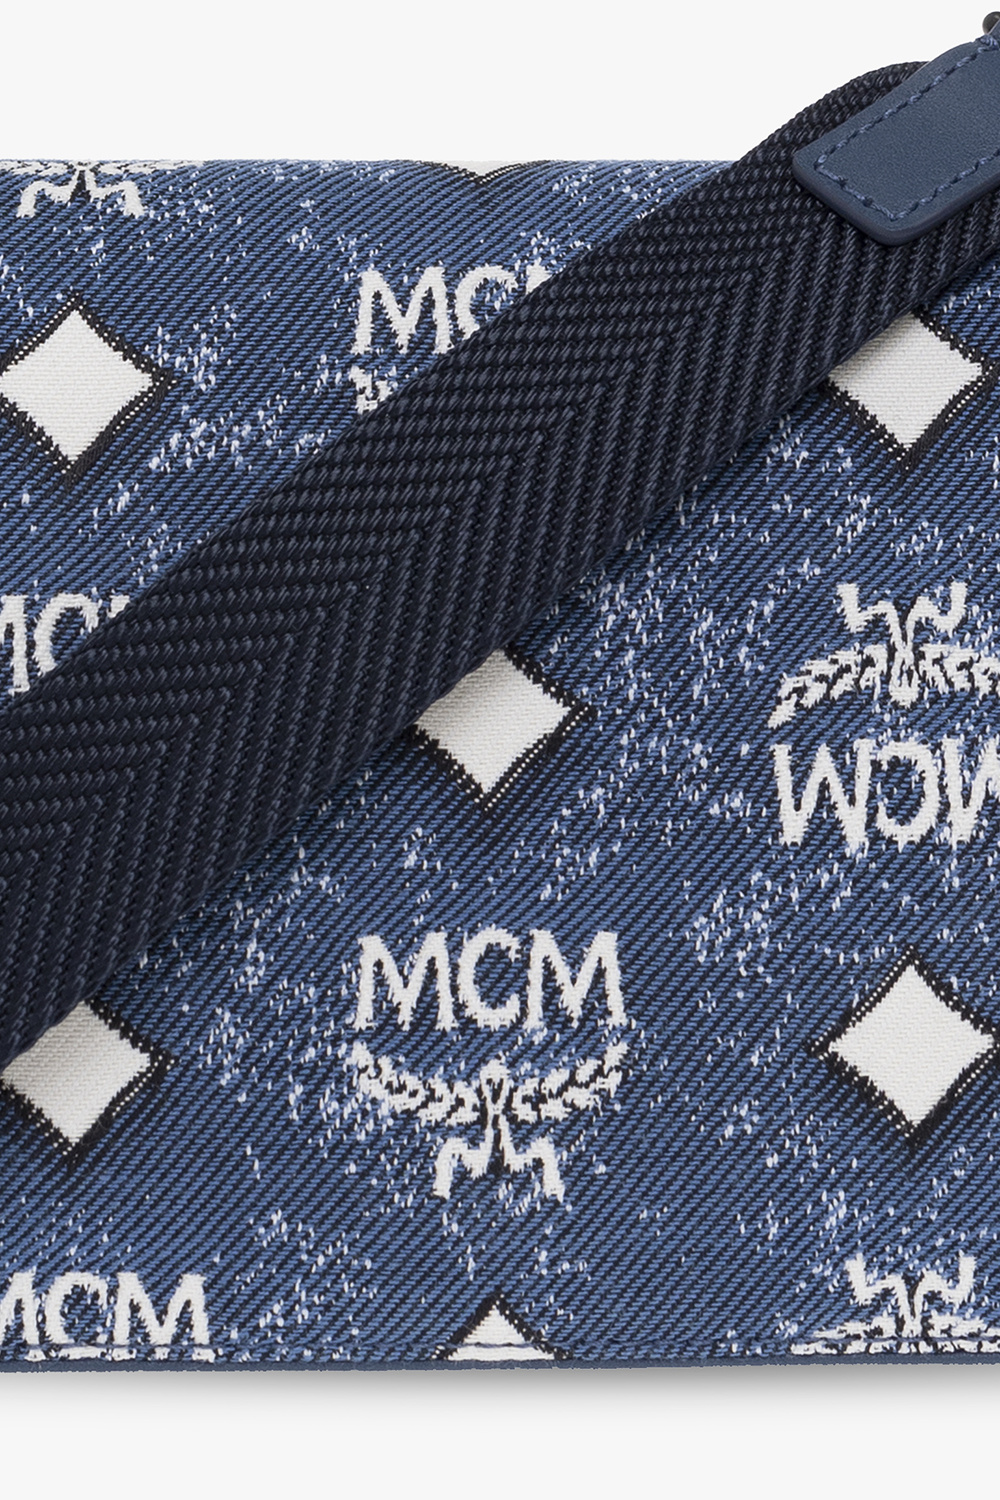 MCM 'aren' Mini Handbag in Blue